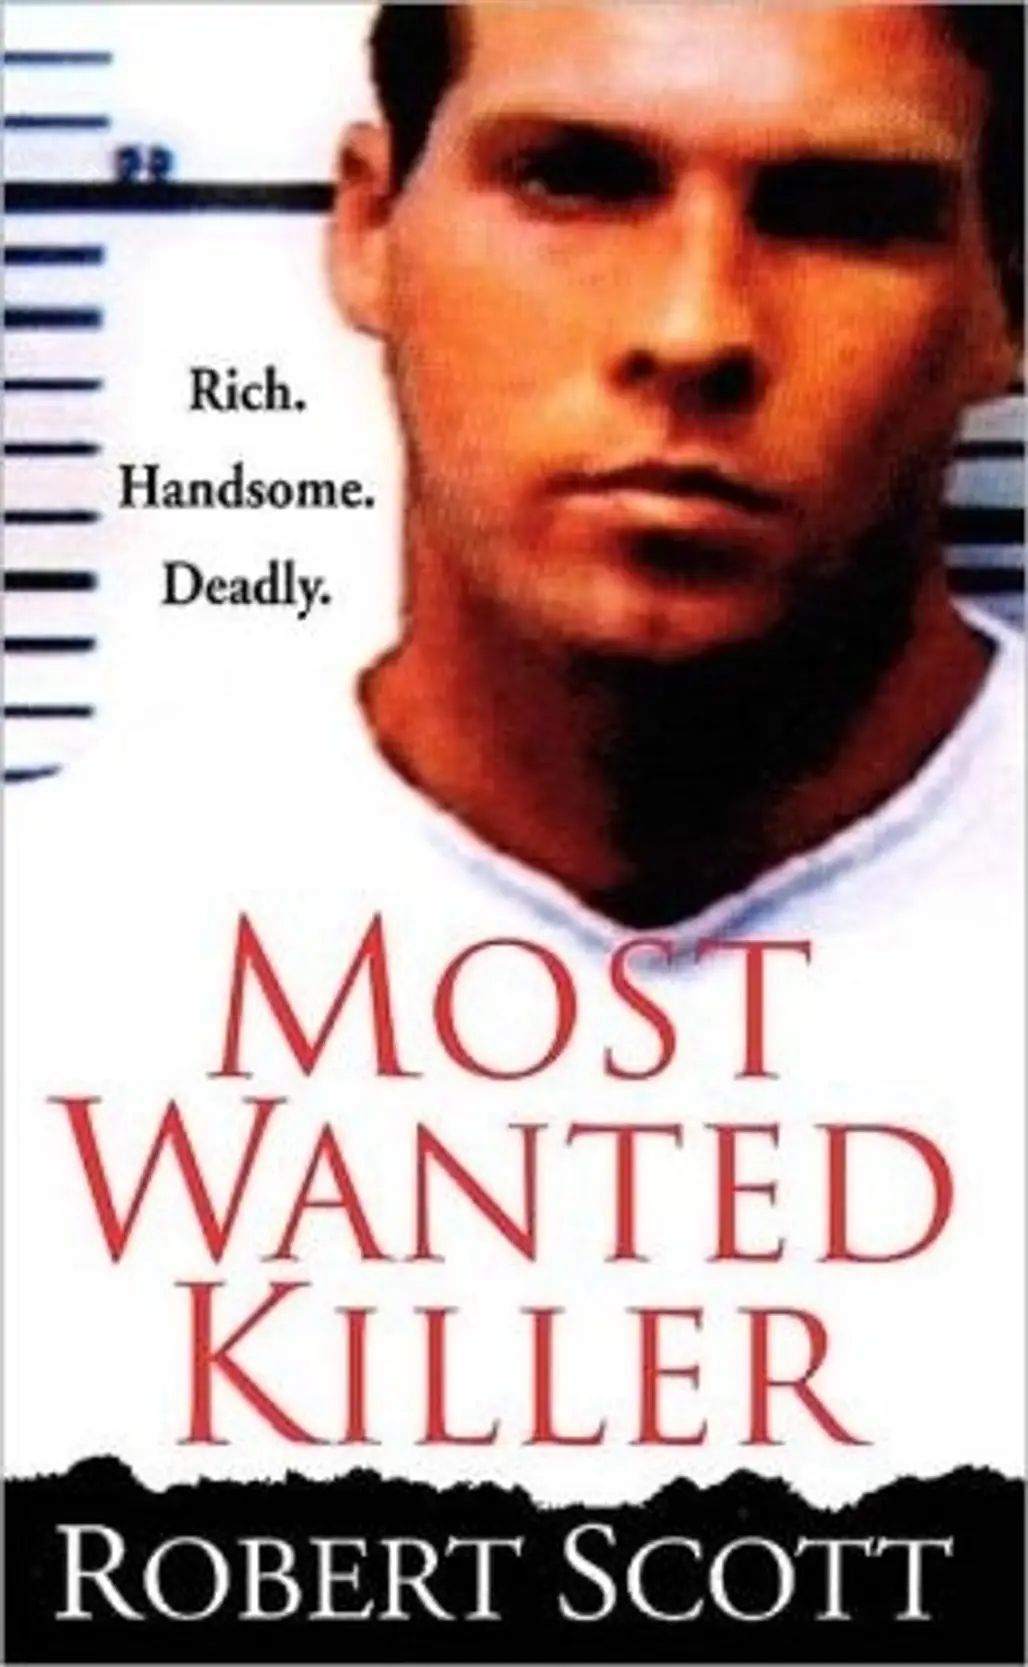 Most Wanted Killer by Robert Scott